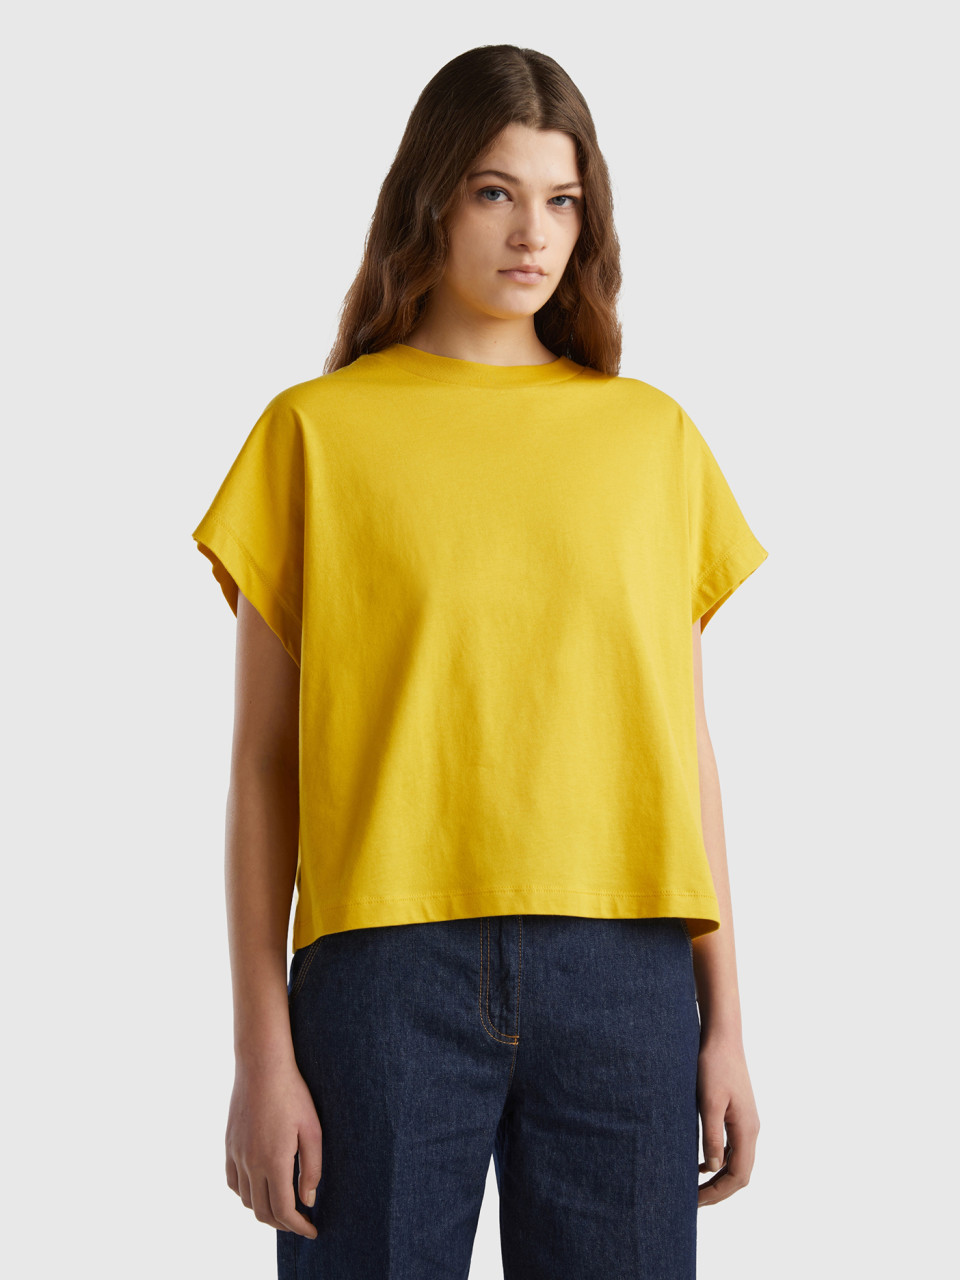 Benetton, Camiseta Con Mangas Kimono, Amarillo, Mujer